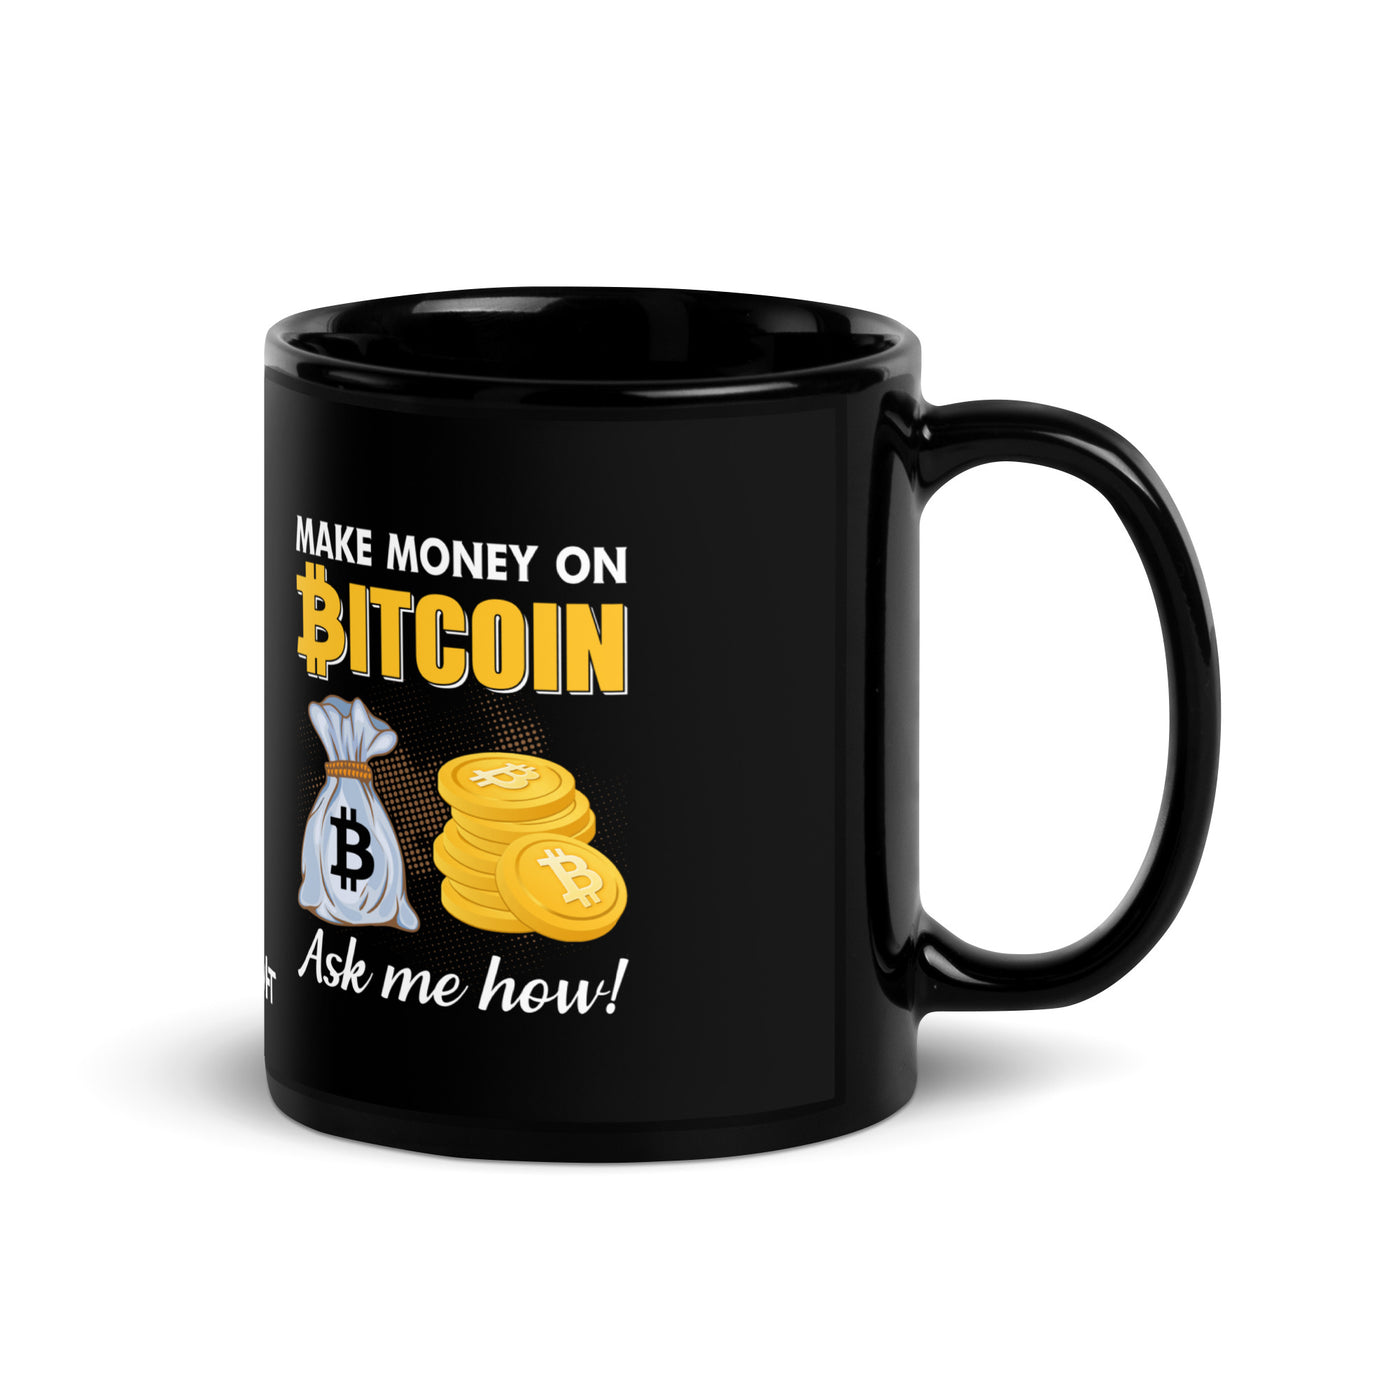 Make money on Bitcoin, Ask me how - Black Glossy Mug